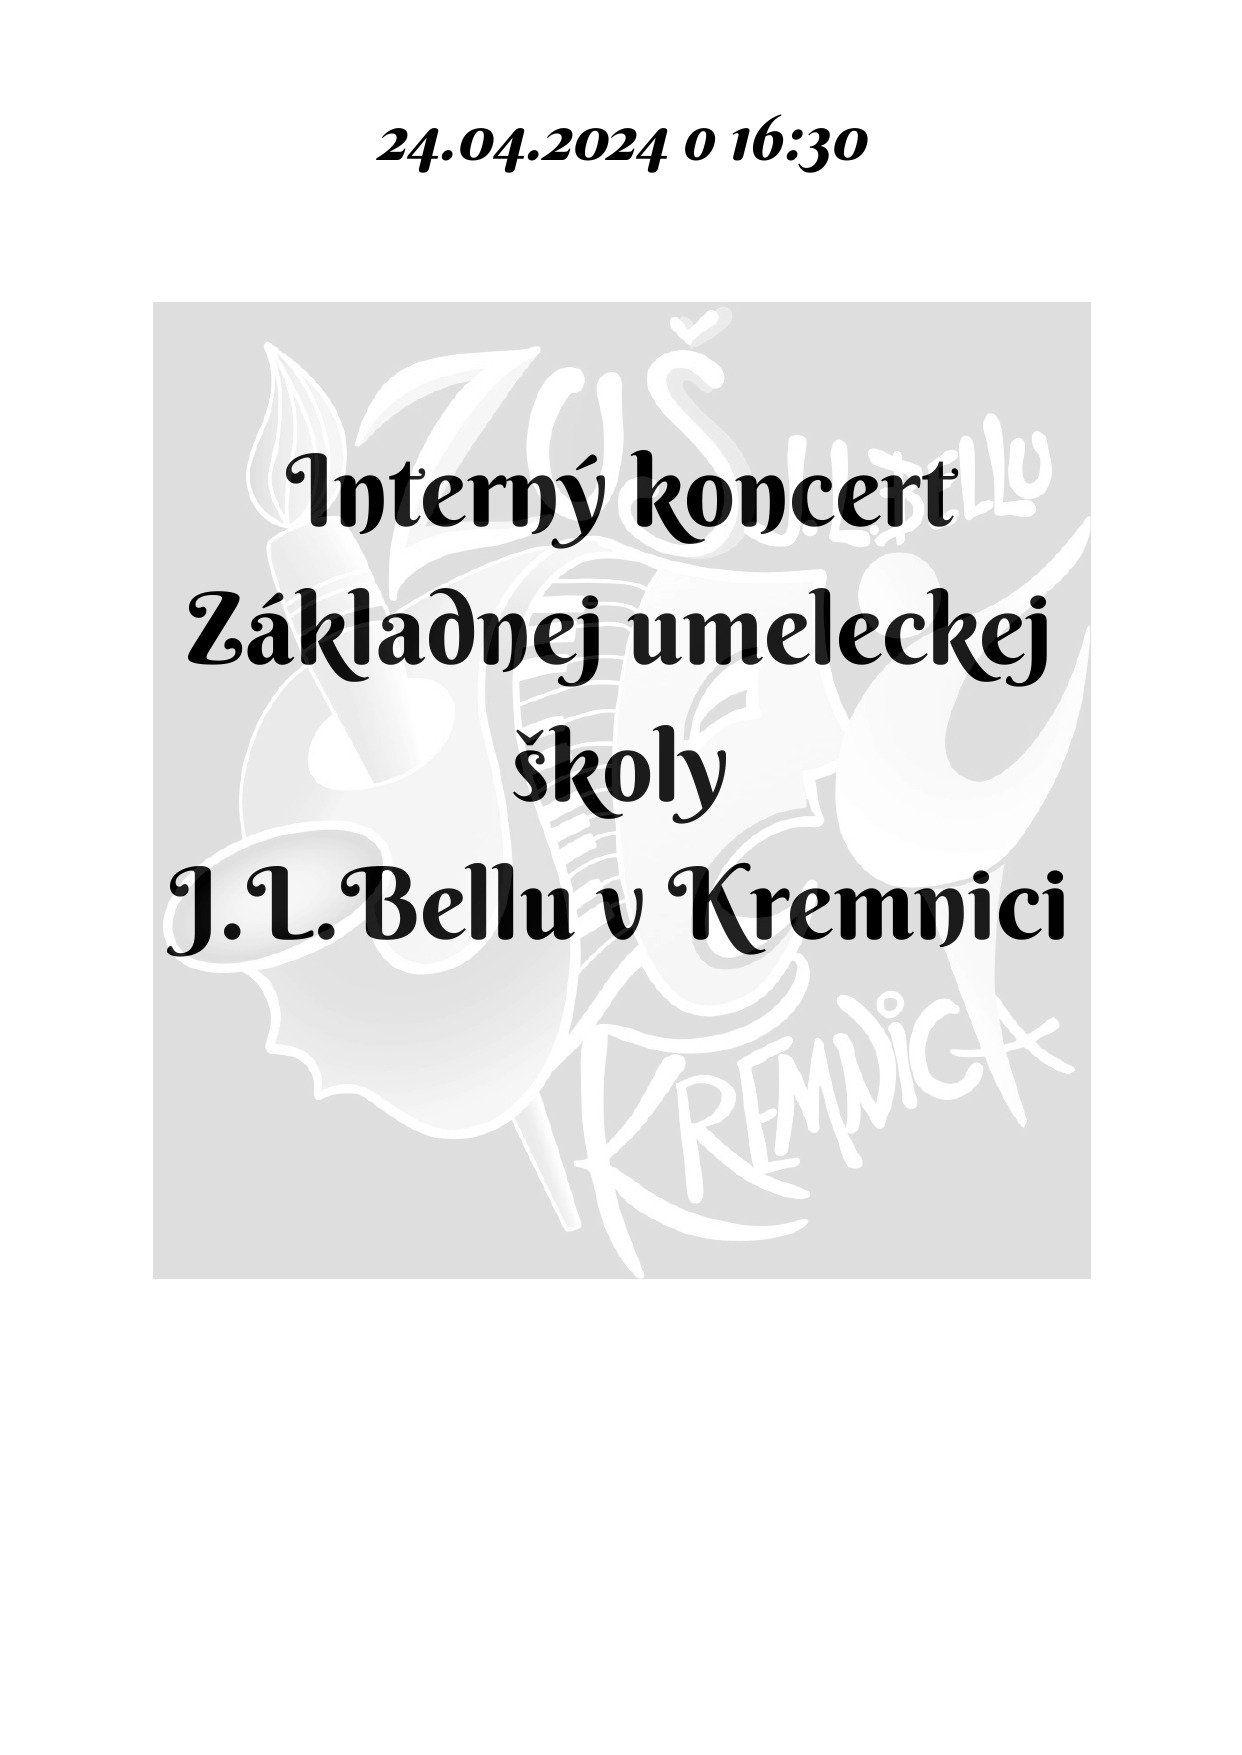 Pozvánka na interný koncert dnes 24.04. o 16:30 v sále ZUŠ, alebo online - Obrázok 1